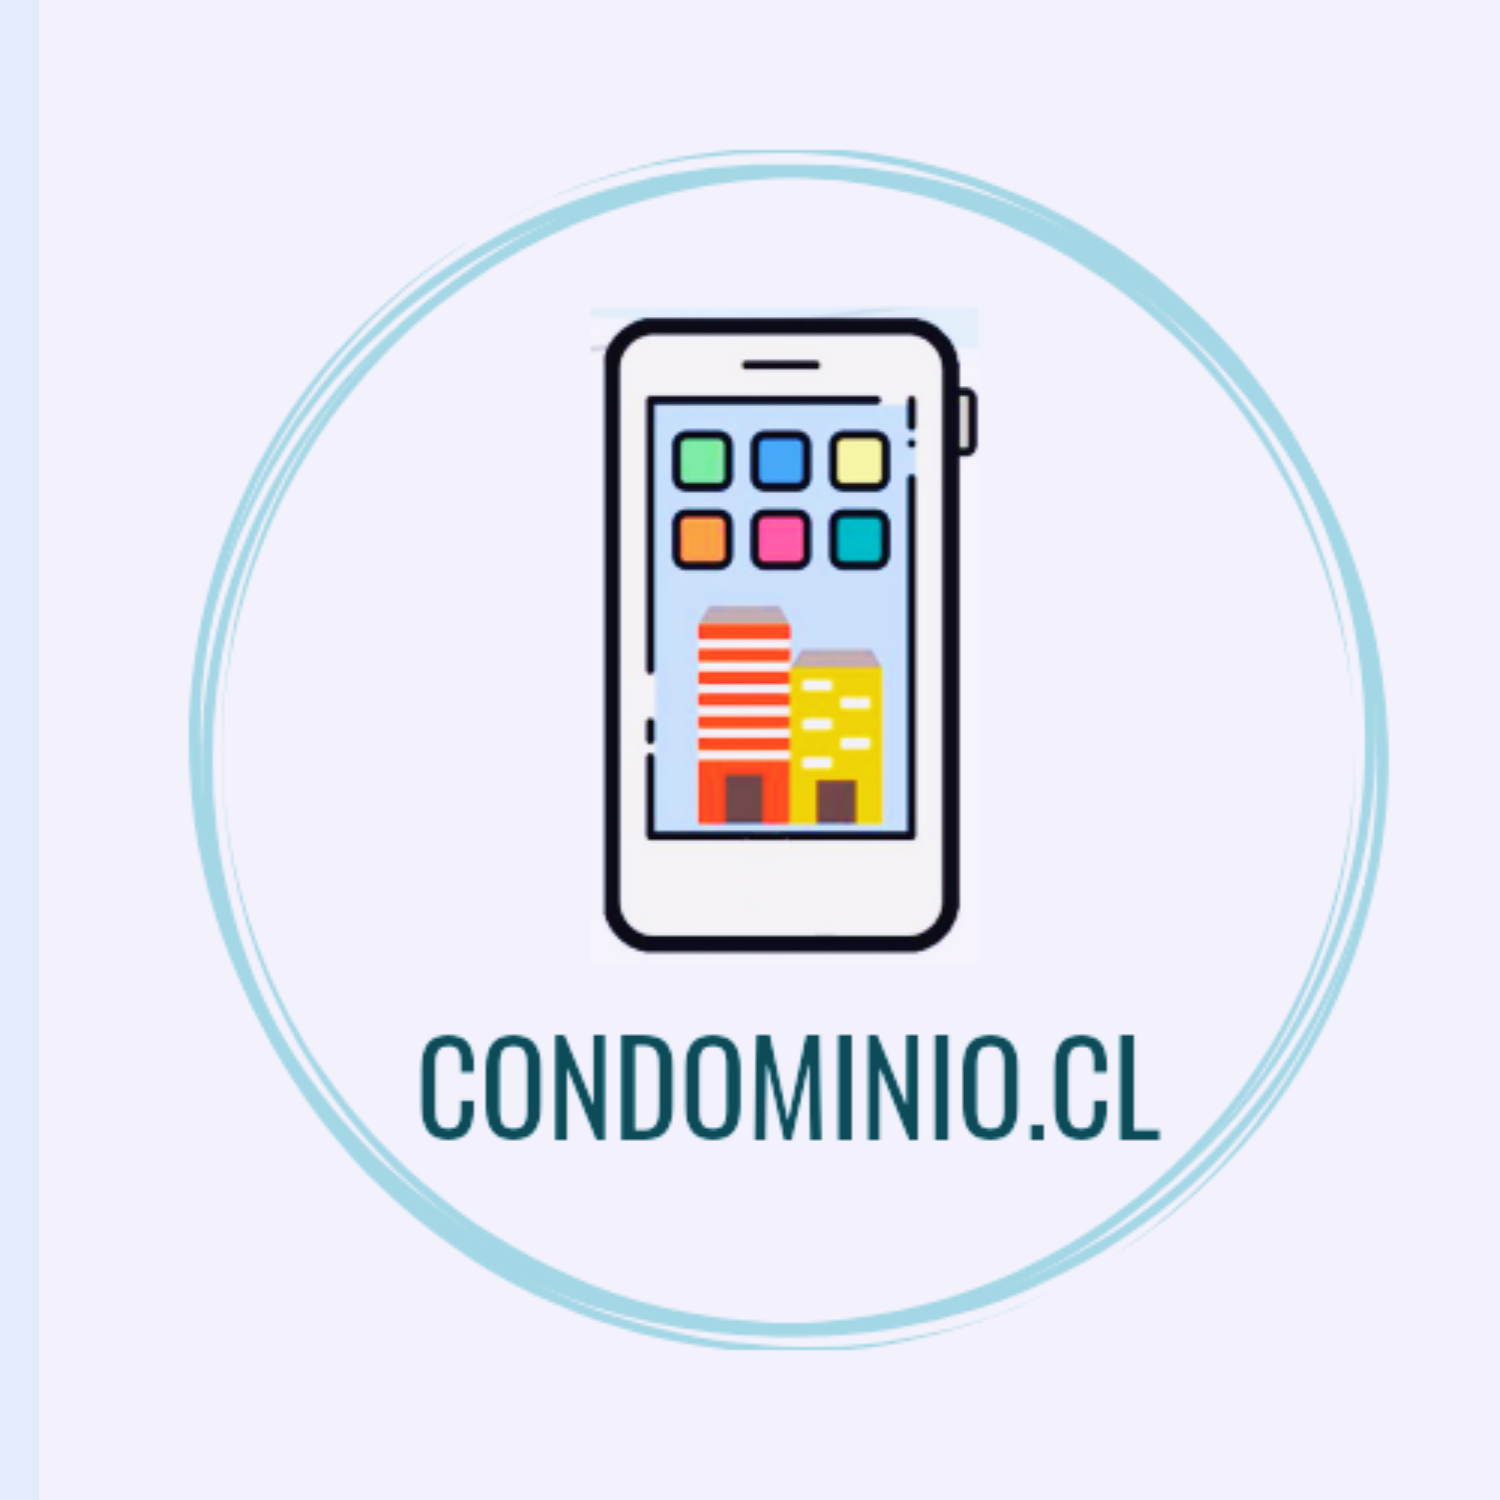 Condominio.cl